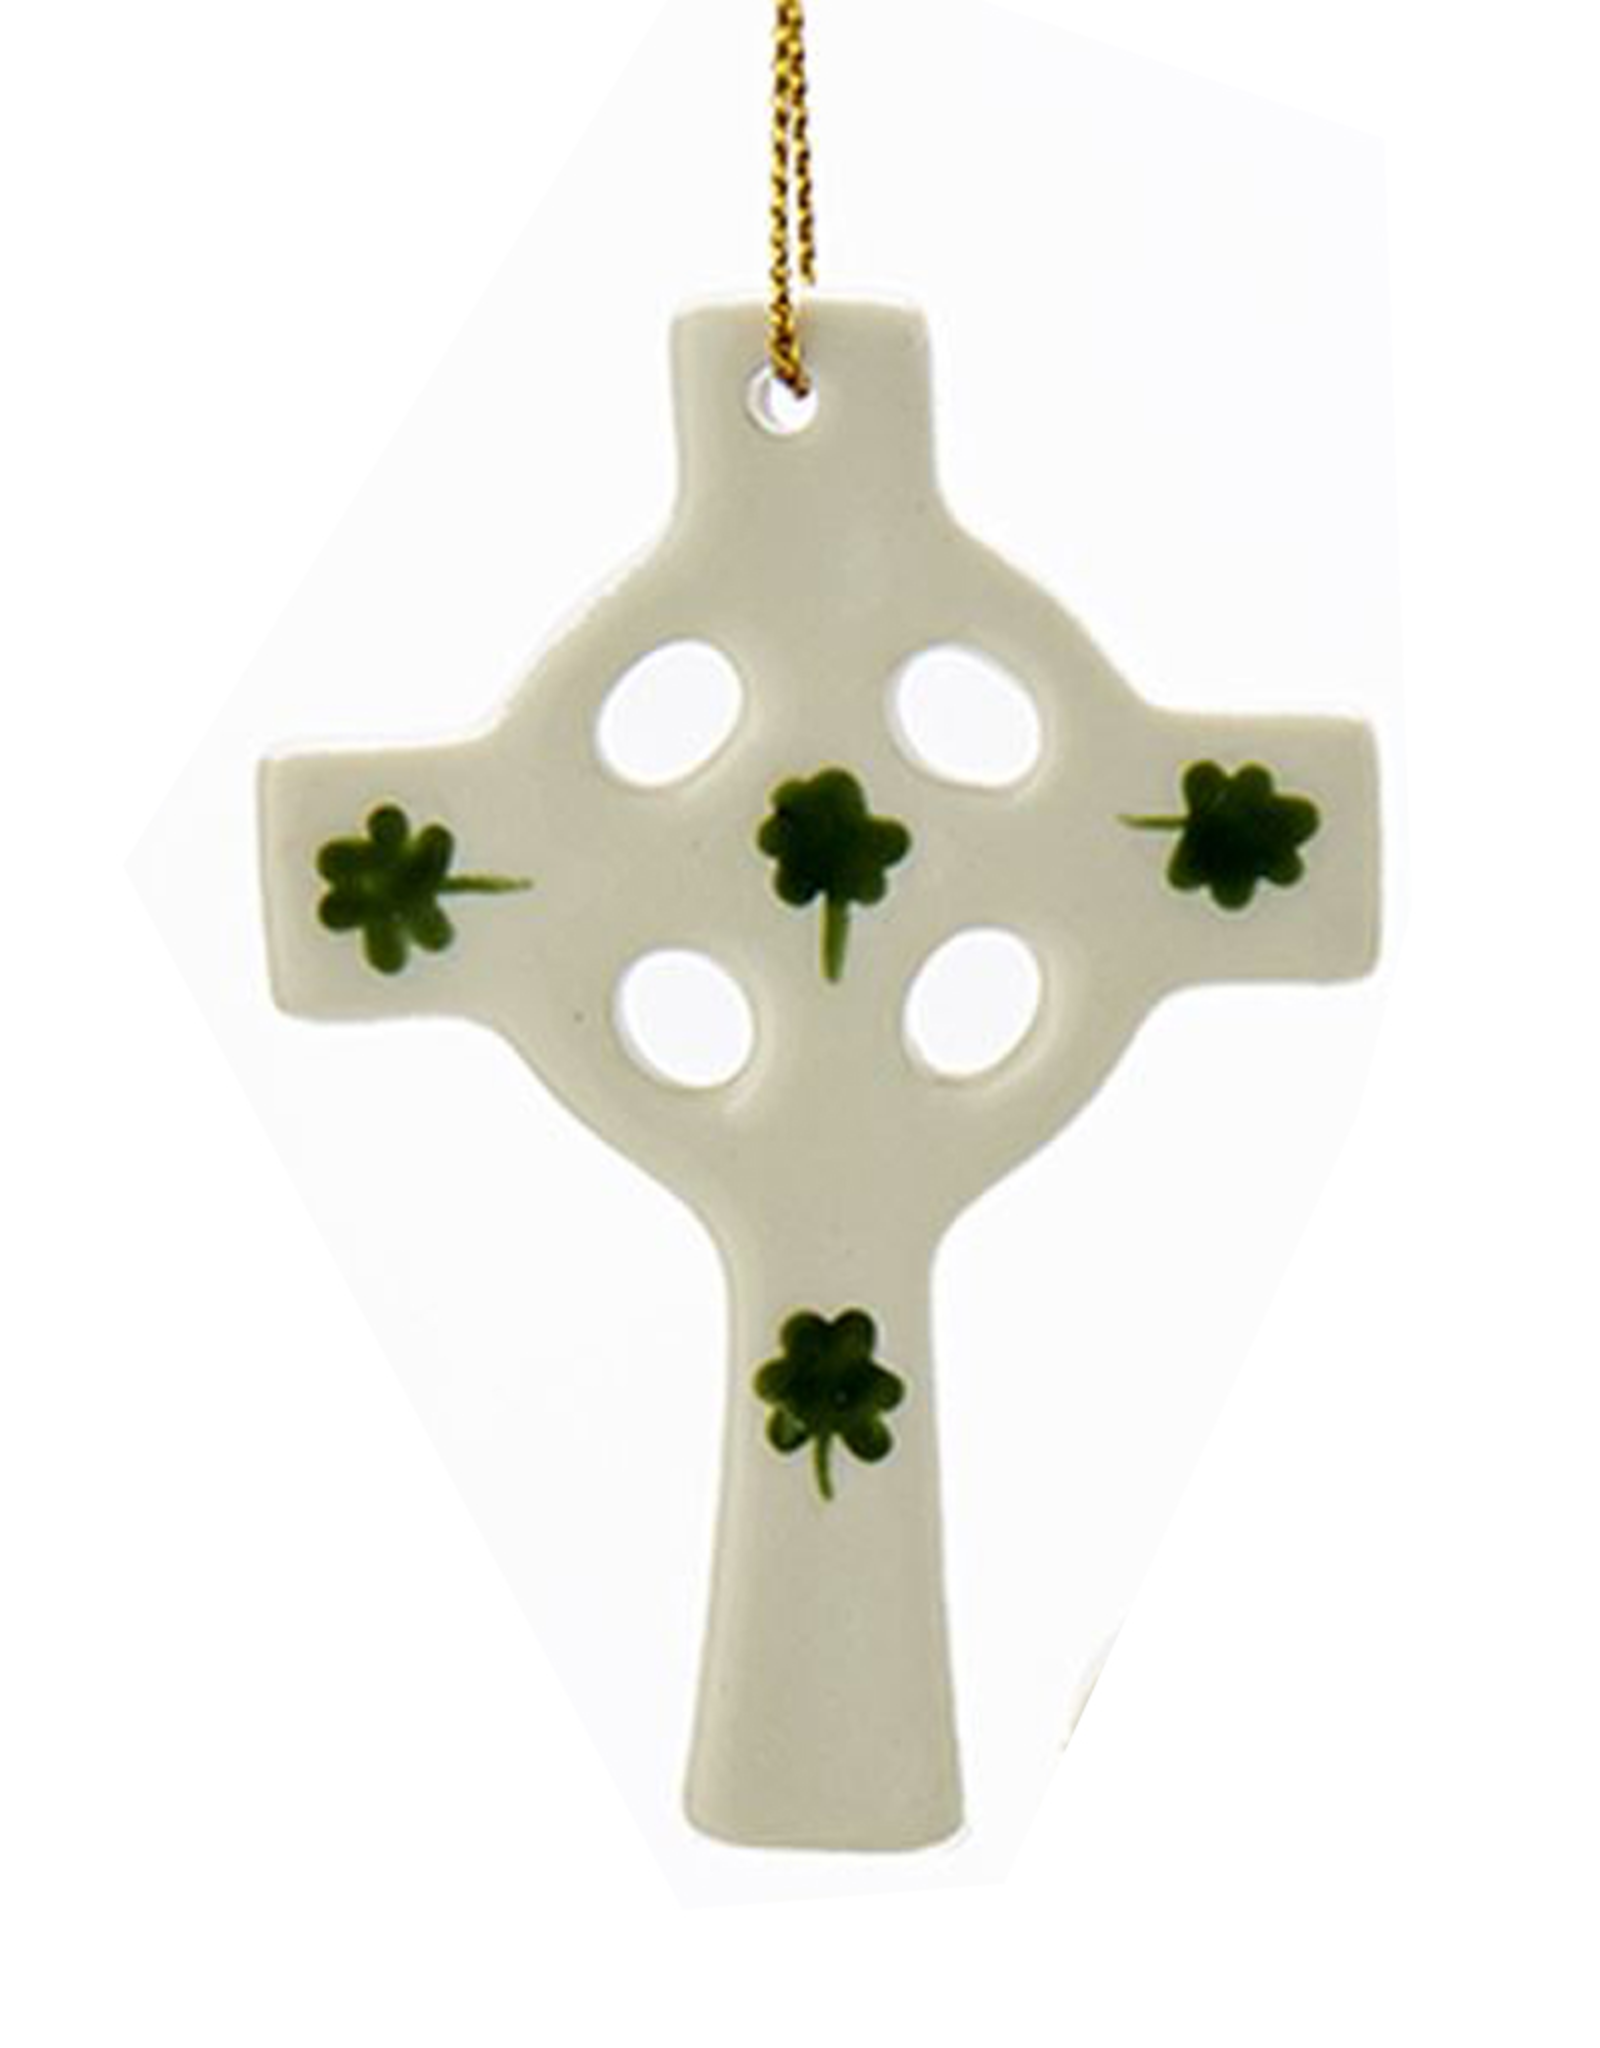 Kurt Adler Irish Christmas Ornament Porcelain Cross w Shamrocks